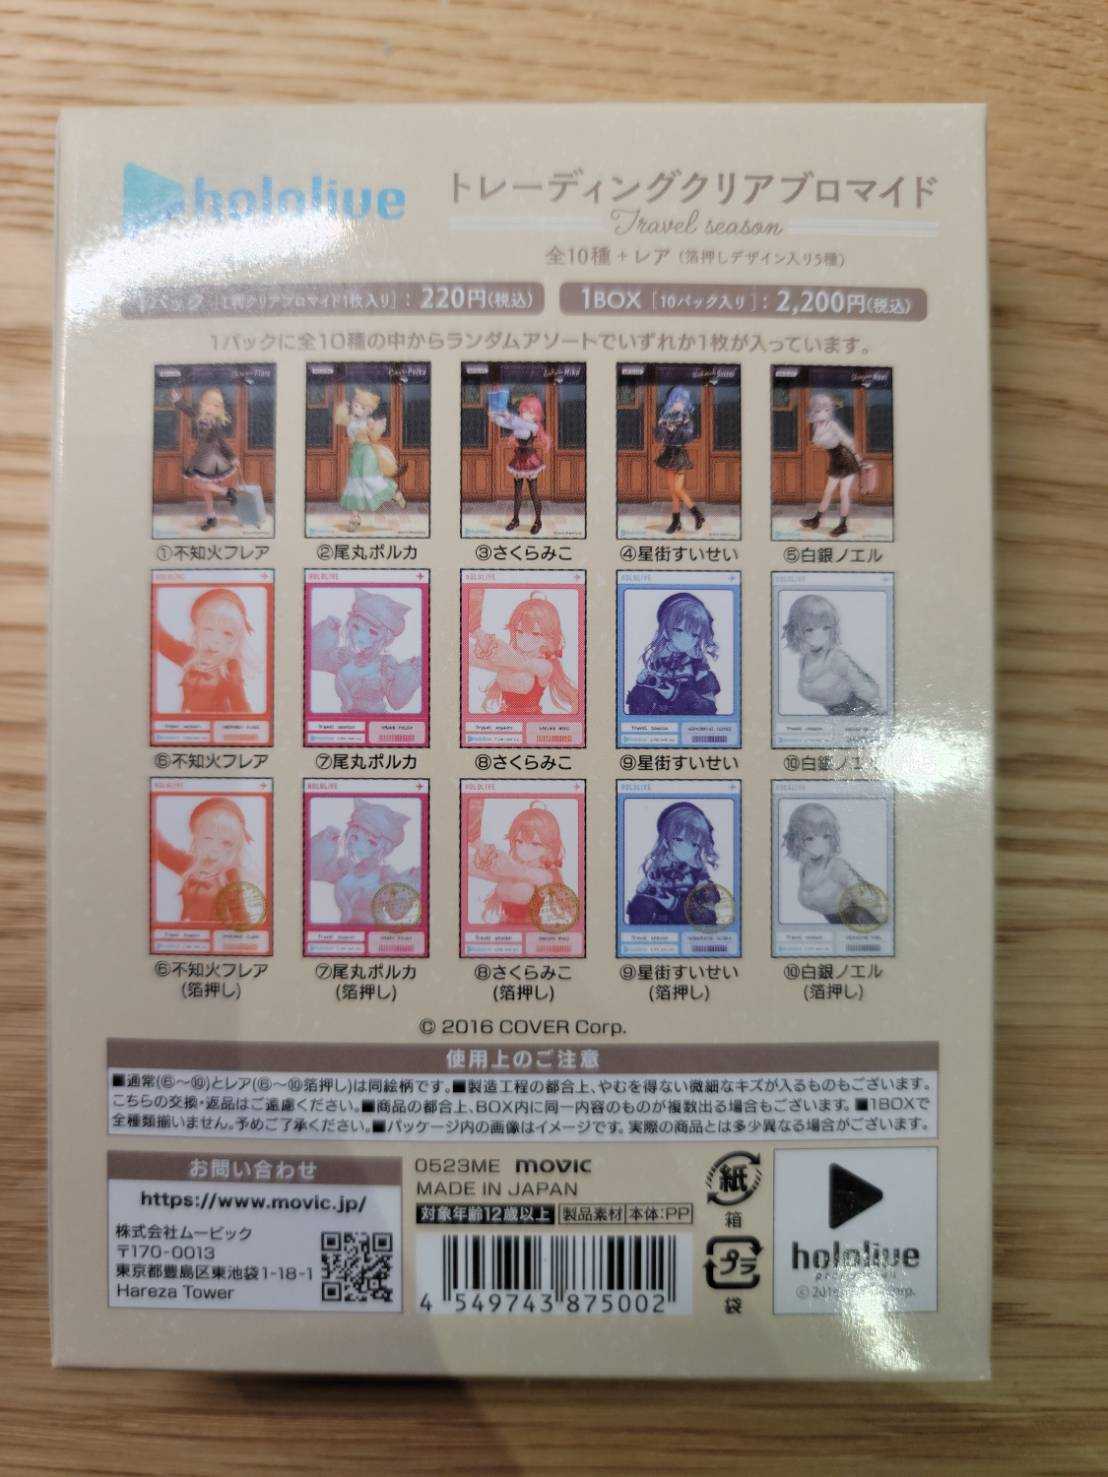 【全新現貨】Hololive x animate 櫻巫女 星街彗星 さくらみこ 星街すいせい 不知火建設 拍立得收藏卡盒